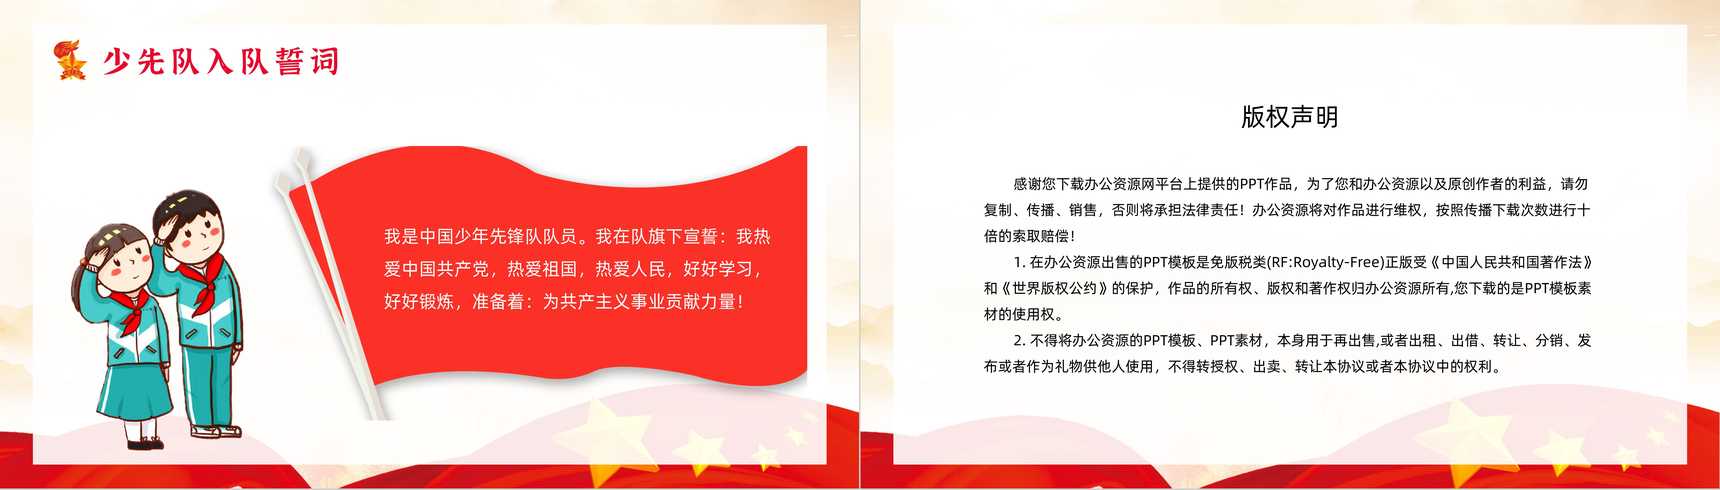 红领巾心向党中国少先队基本知识培训小学生儿童入队宣誓少先队建队纪念日宣传PPT模板-8